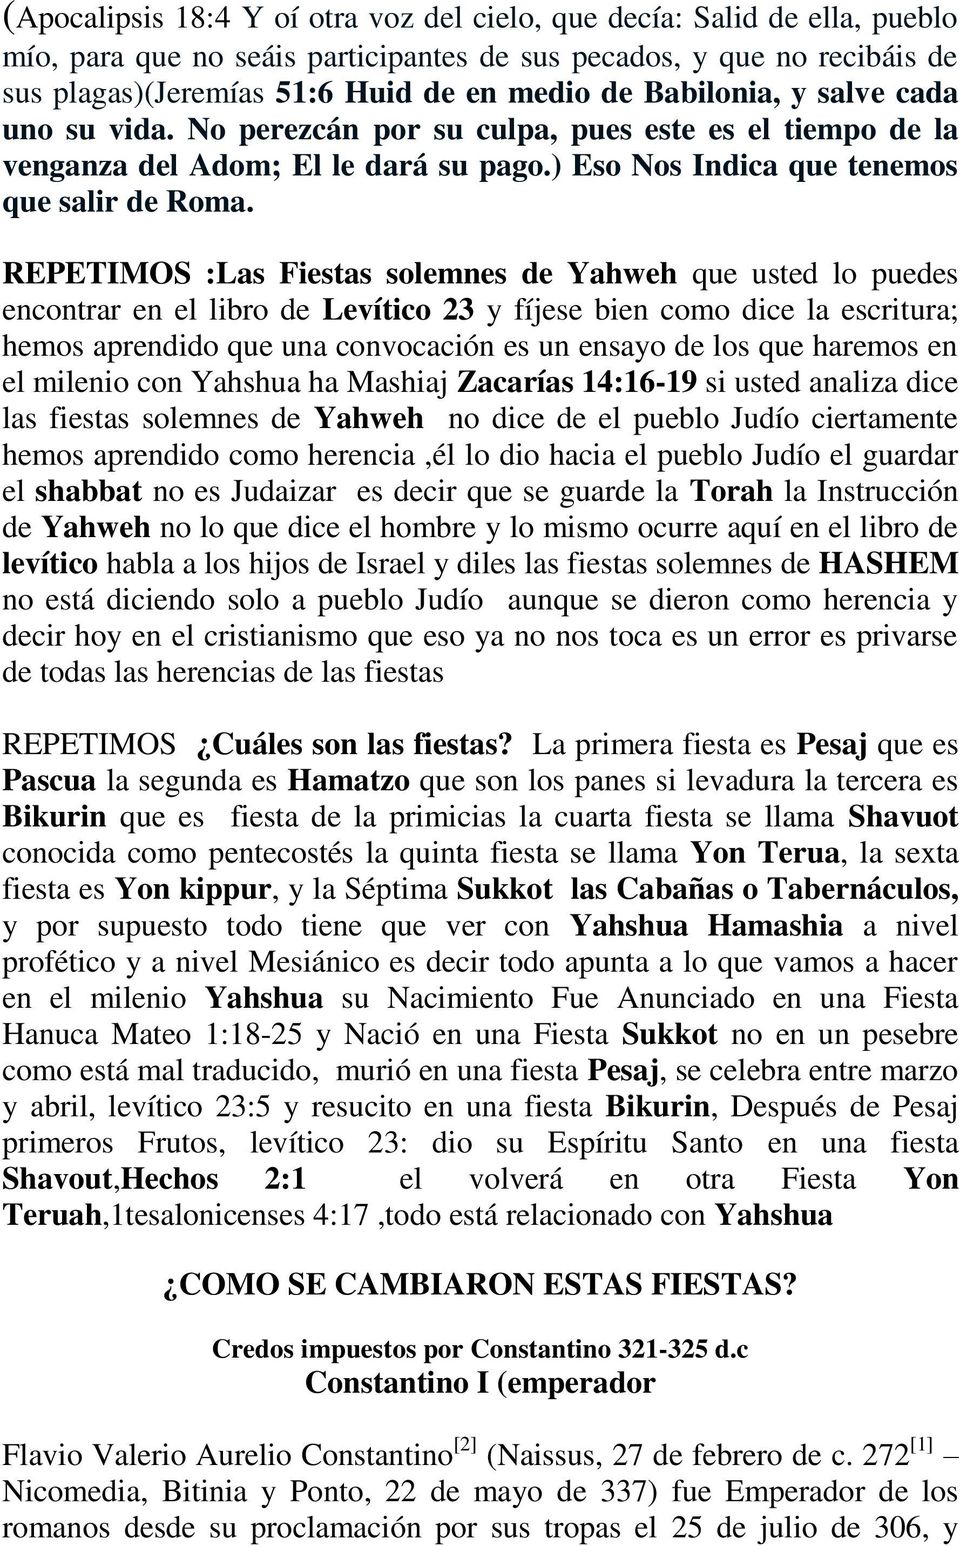 REPETIMOS :Las Fiestas solemnes de Yahweh que usted lo puedes encontrar en el libro de Levítico 23 y fíjese bien como dice la escritura; hemos aprendido que una convocación es un ensayo de los que